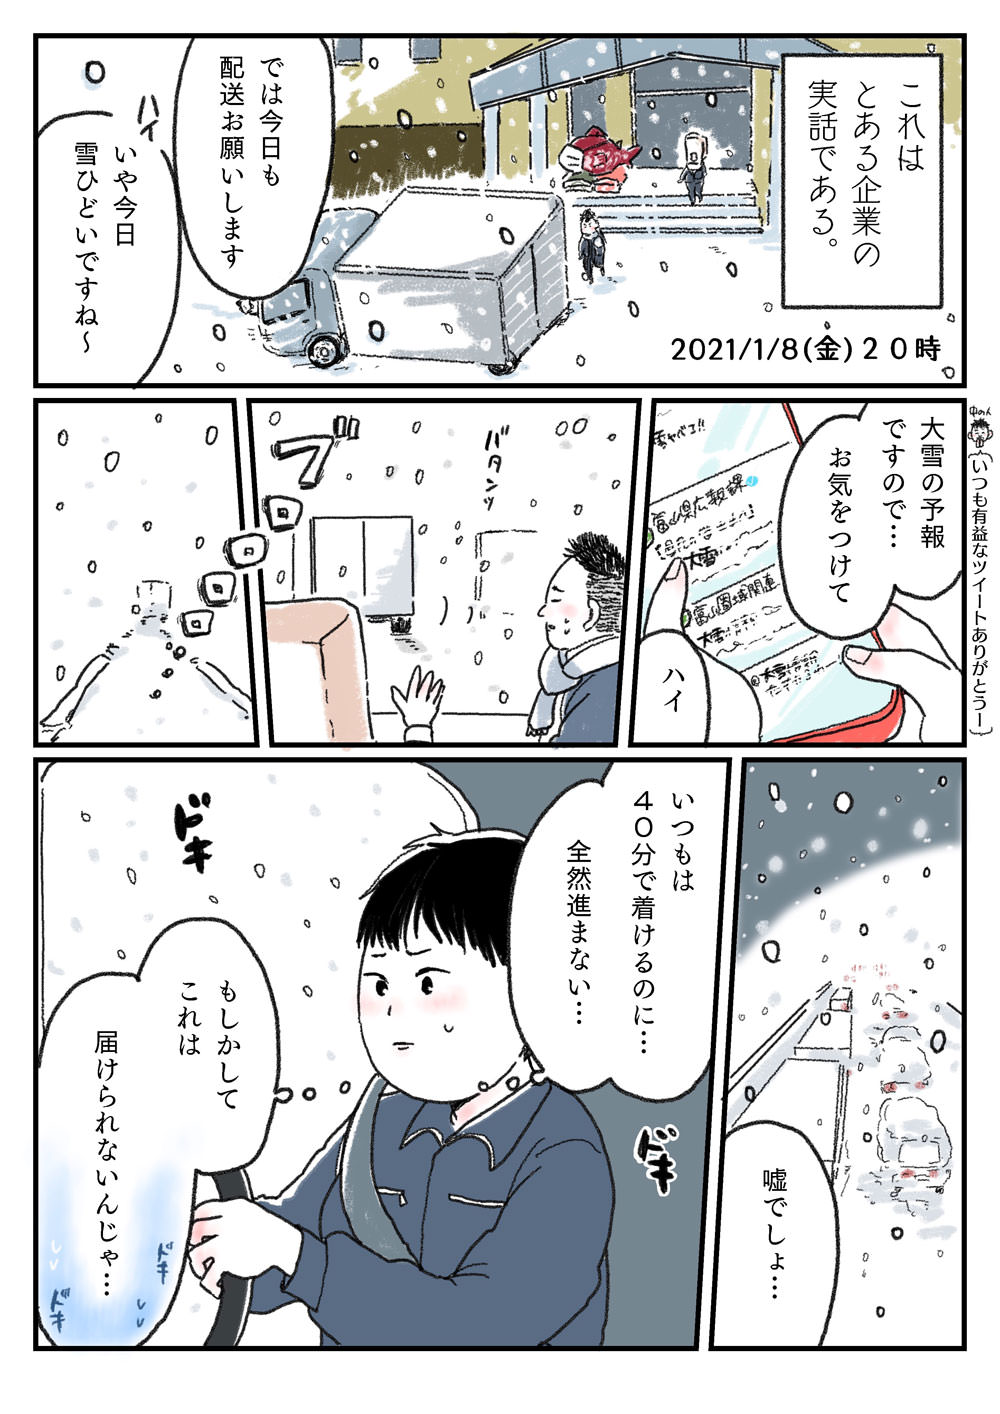 ウメカマンガ(巻) 3m目 新年早々の大雪で超渋滞！富山人の悲喜こもごも